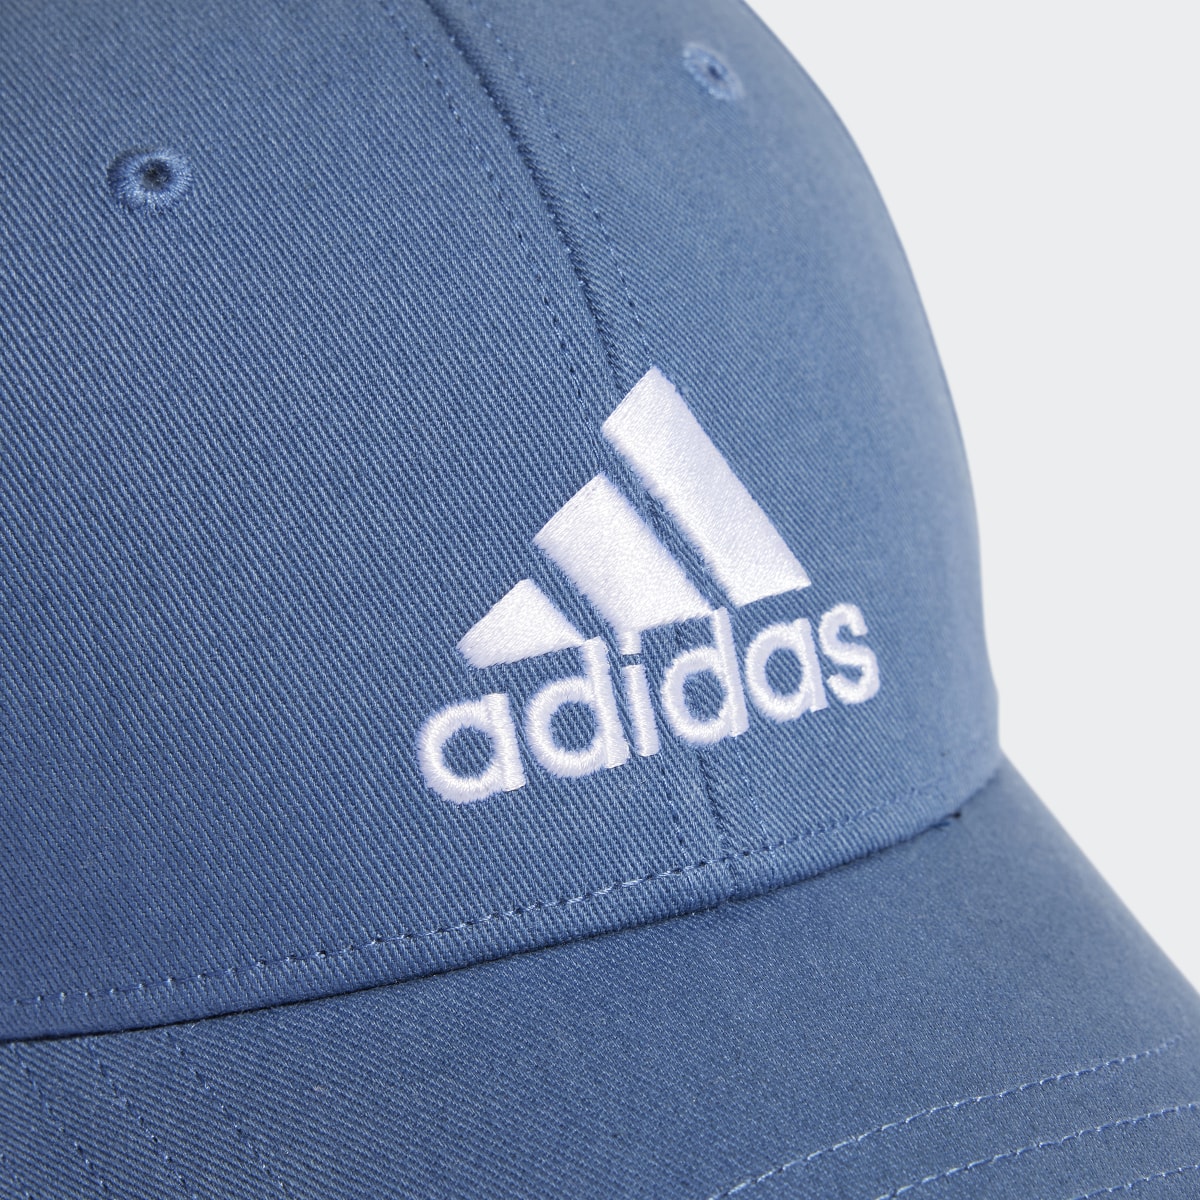 Adidas COTTON BASEBALL CAP. 4